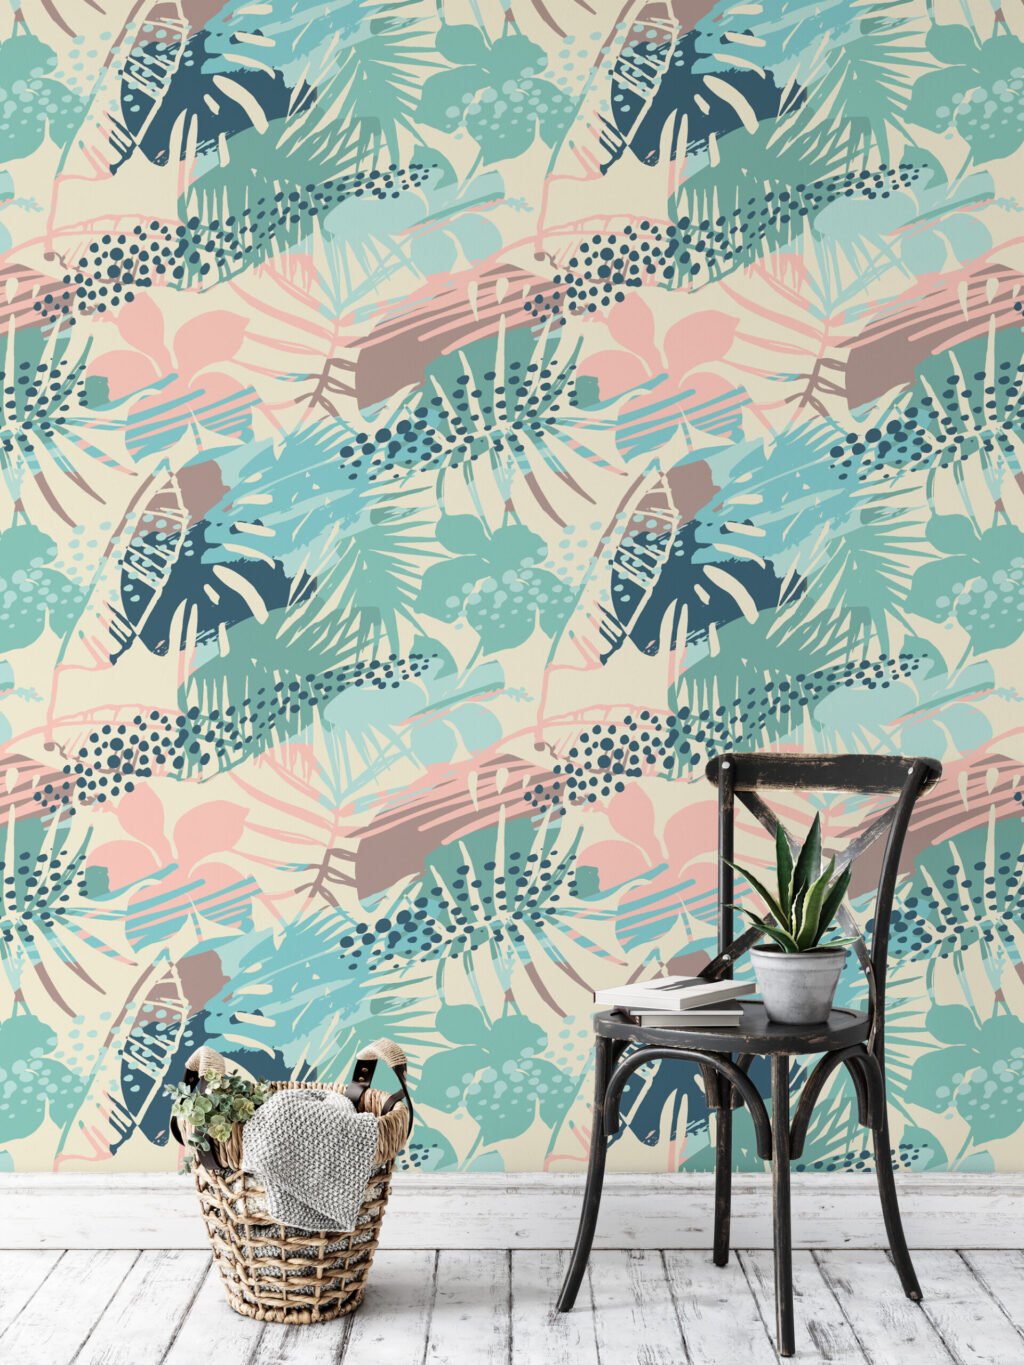 Yaz Esintileri Retro Renkli Tropikal Duvar Kağıdı, Soft Pastel 3D Duvar Posteri Tropikal Duvar Kağıtları 3